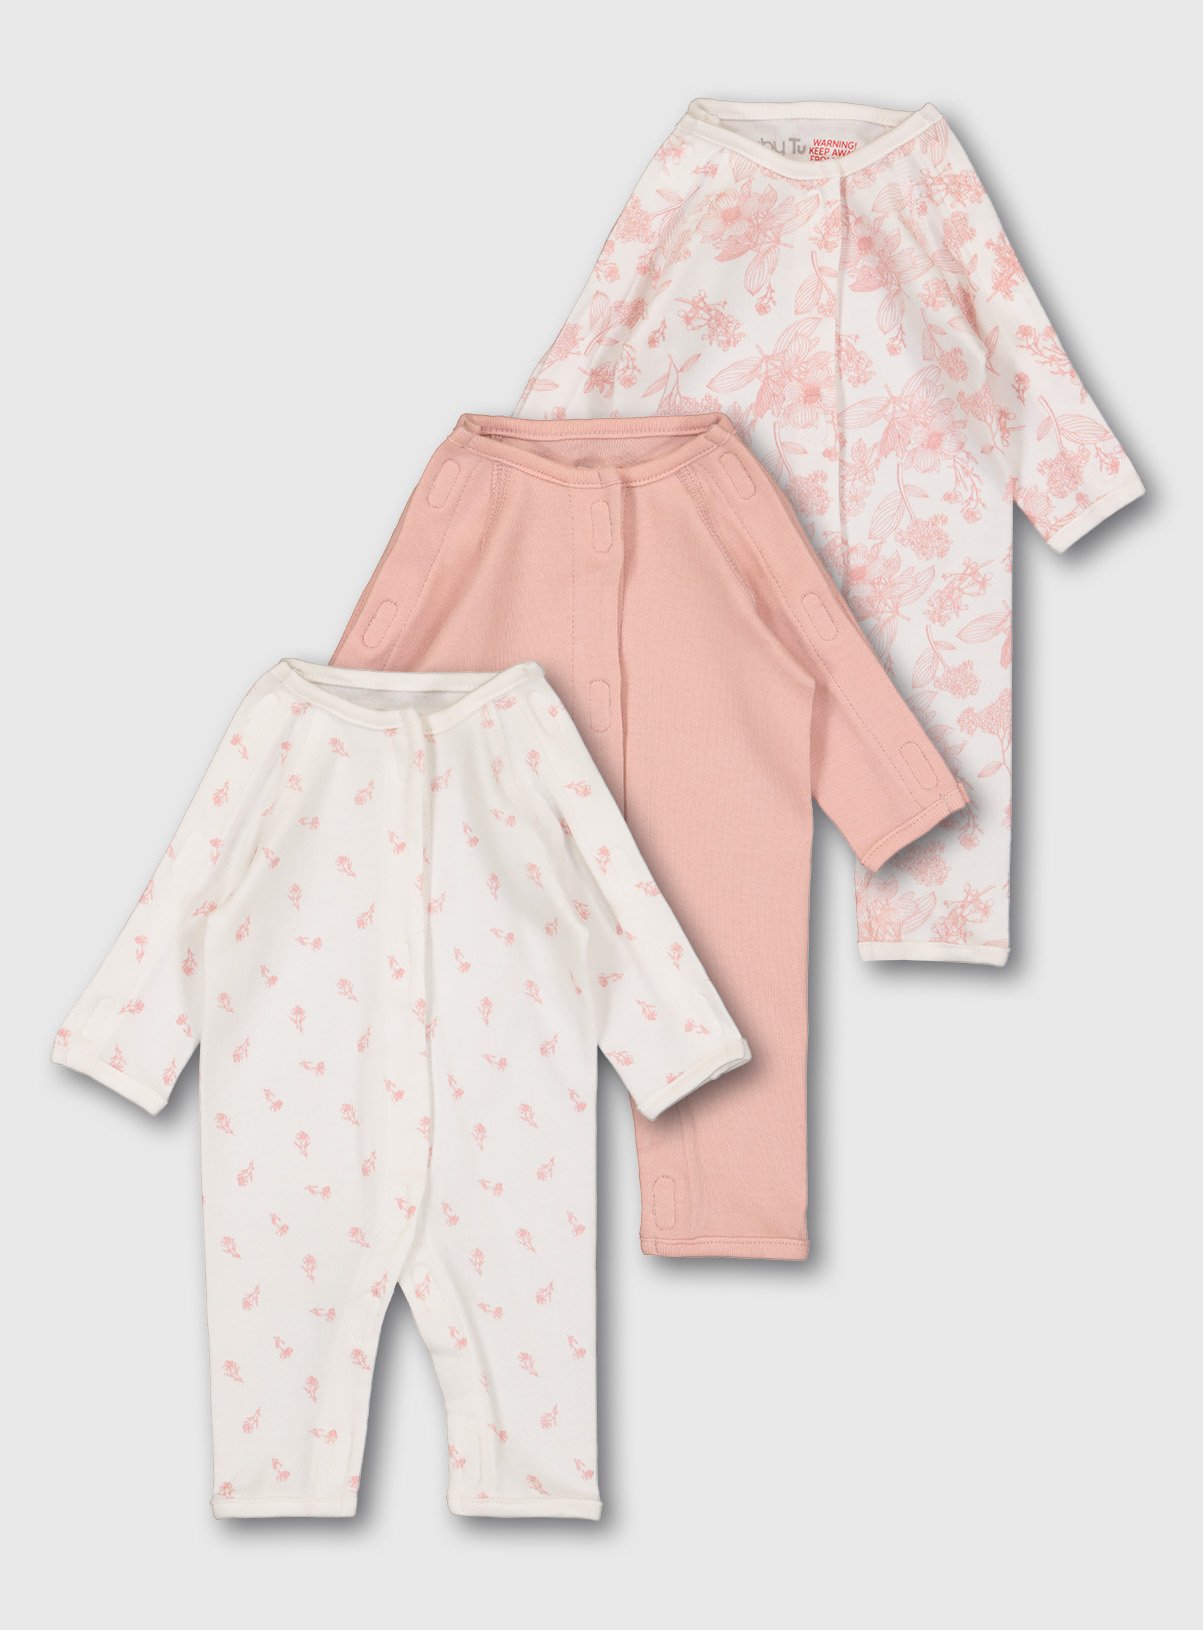 sainsbury's baby girl sleepsuits